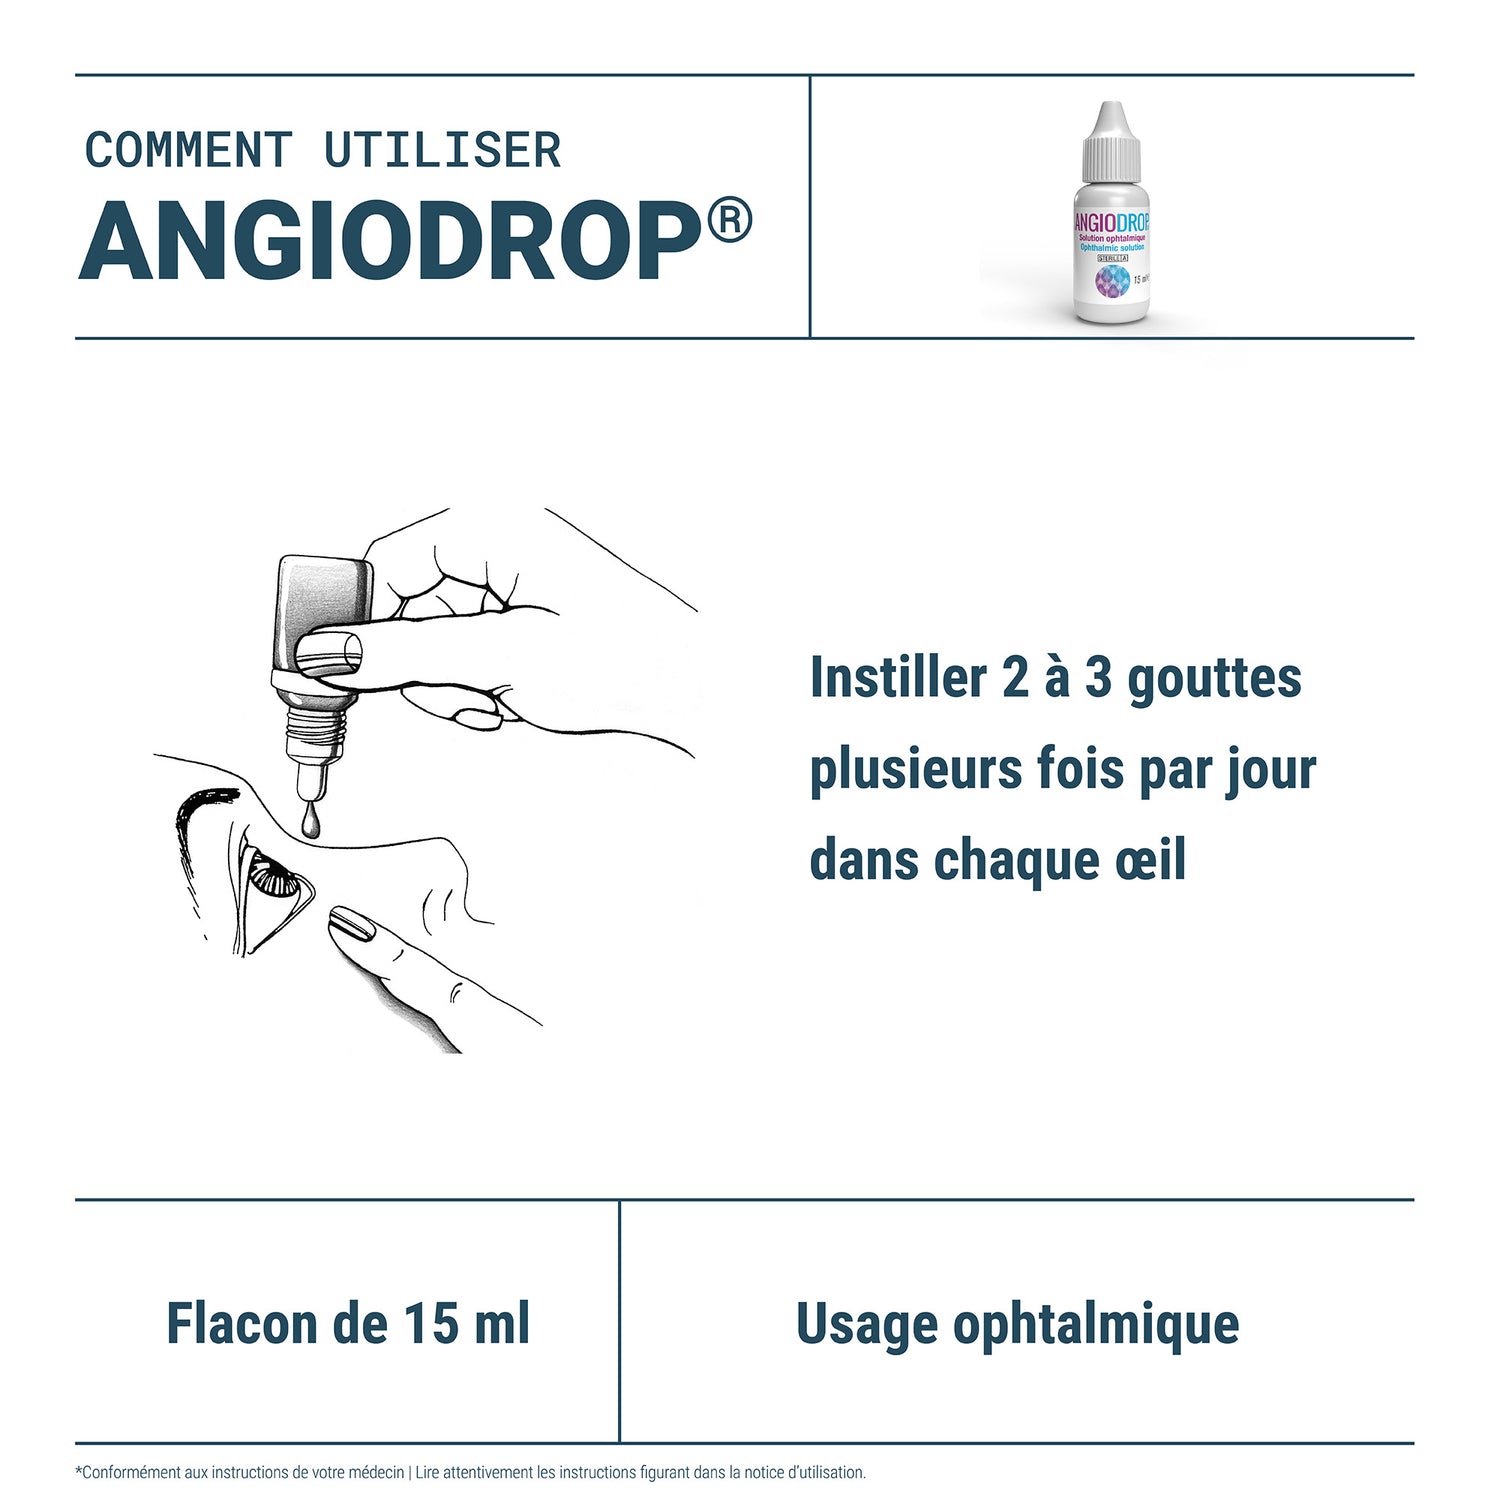 Angiodrop ®